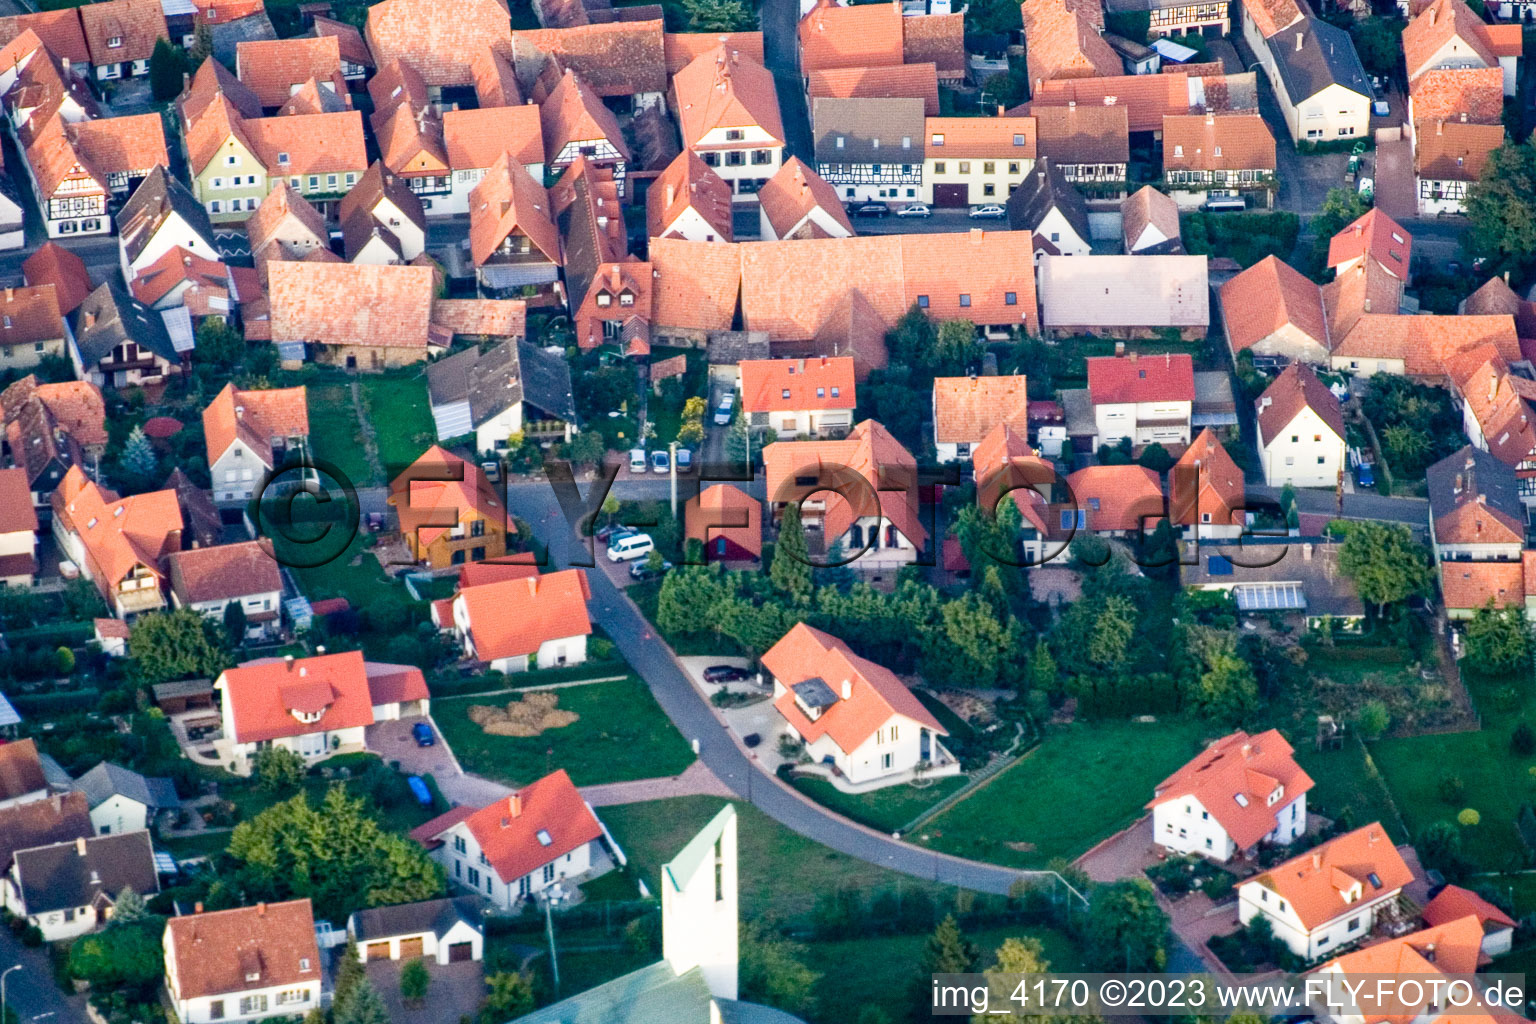 Drone image of District Schweigen in Schweigen-Rechtenbach in the state Rhineland-Palatinate, Germany